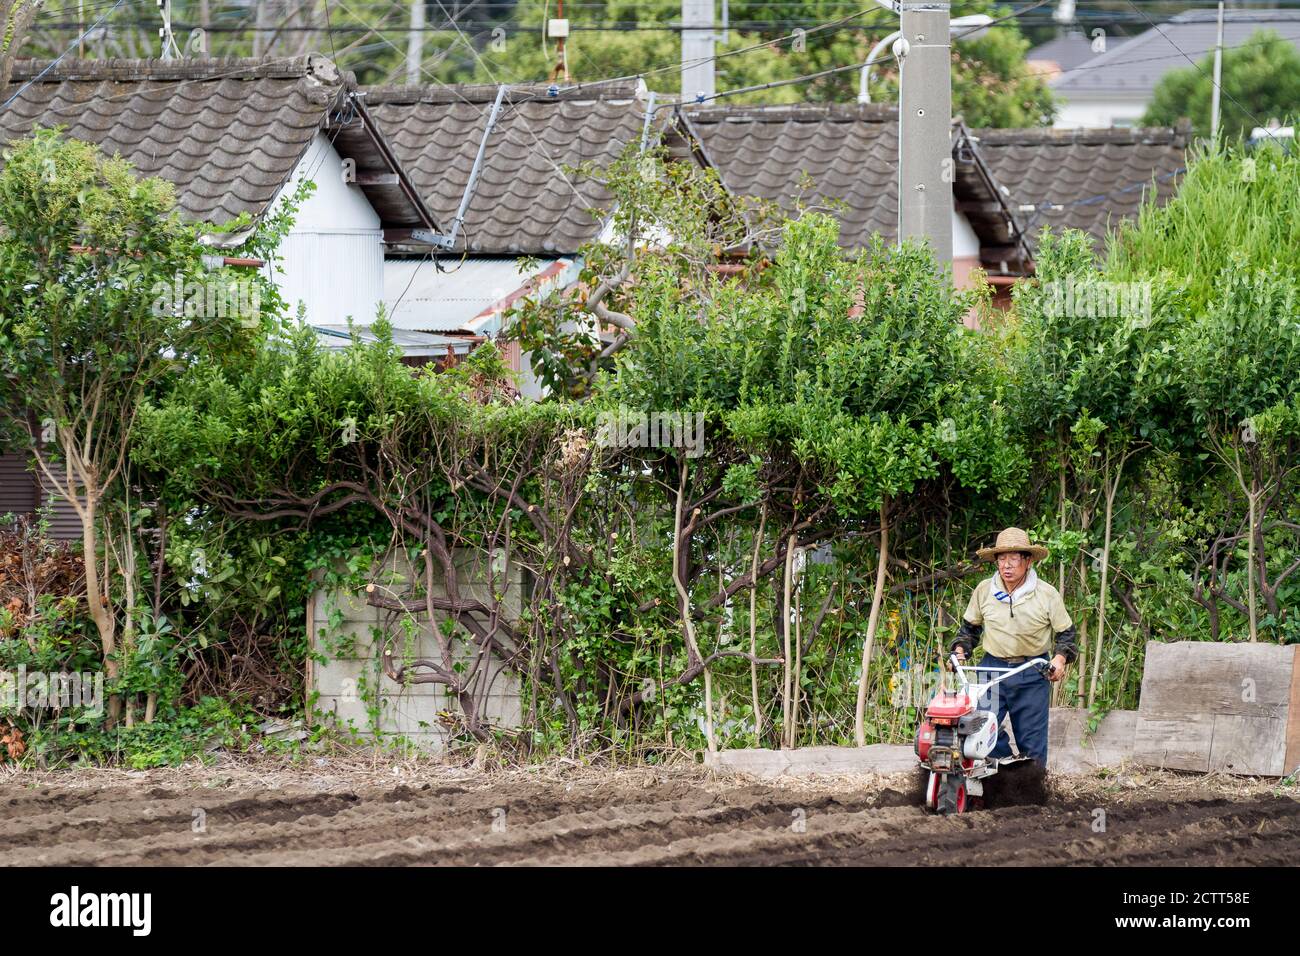 An older Japanese man ploughing a field in a small farm near Yamato, Kanagawa, Japan. Stock Photo